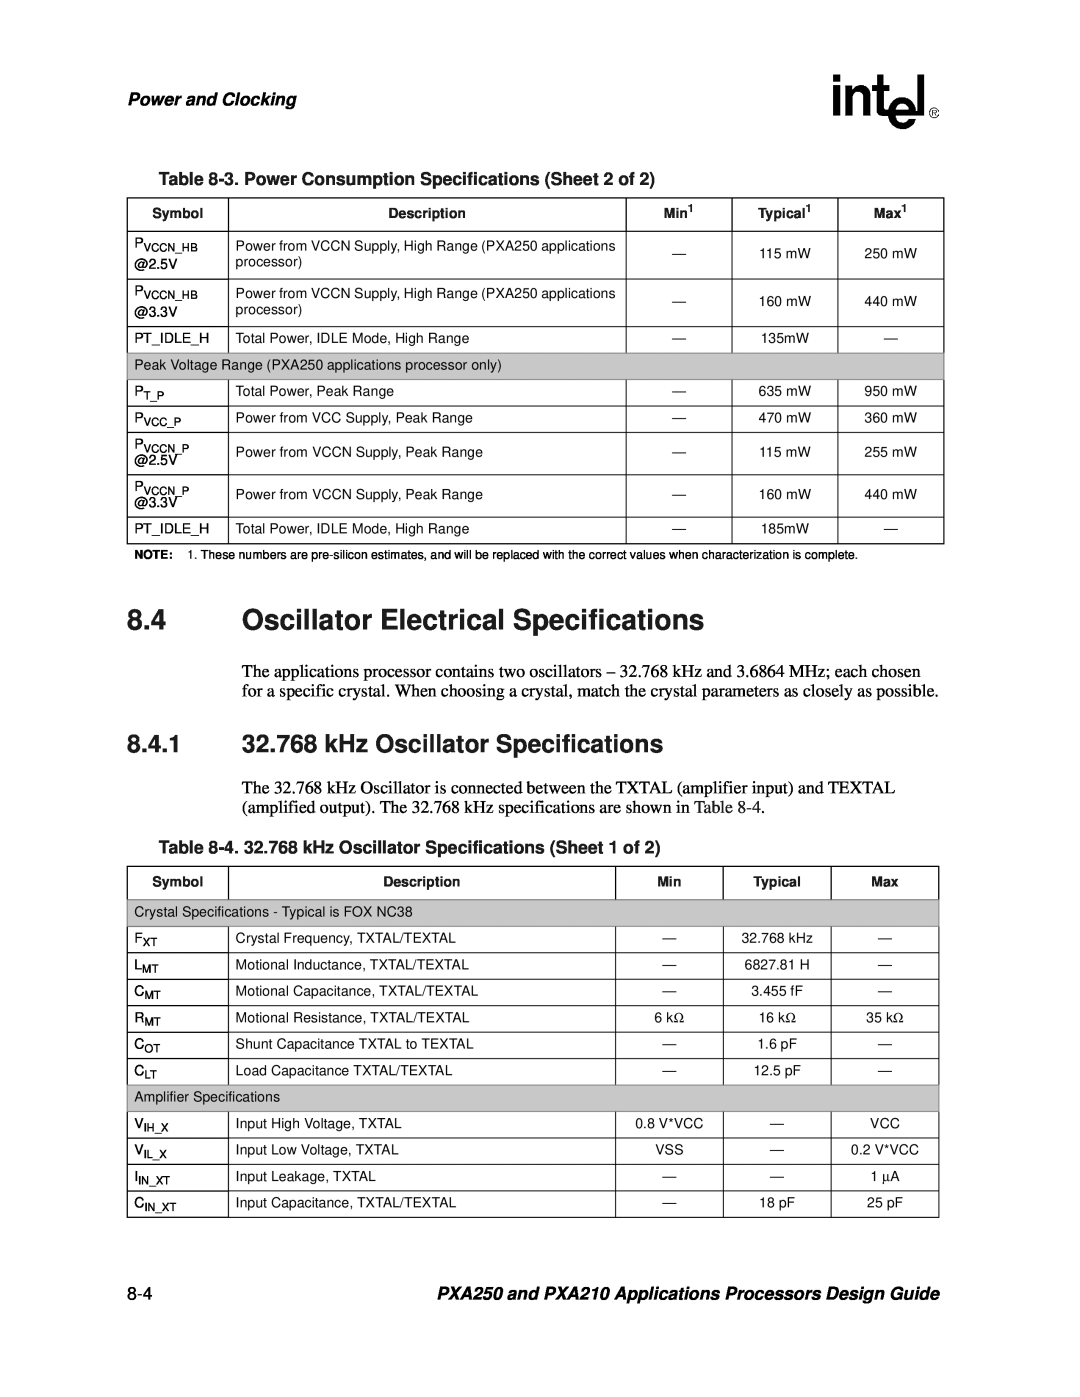 Intel PXA250 and PXA210 manual Oscillator Electrical Specifications, 8.4.1 32.768 kHz Oscillator Specifications 